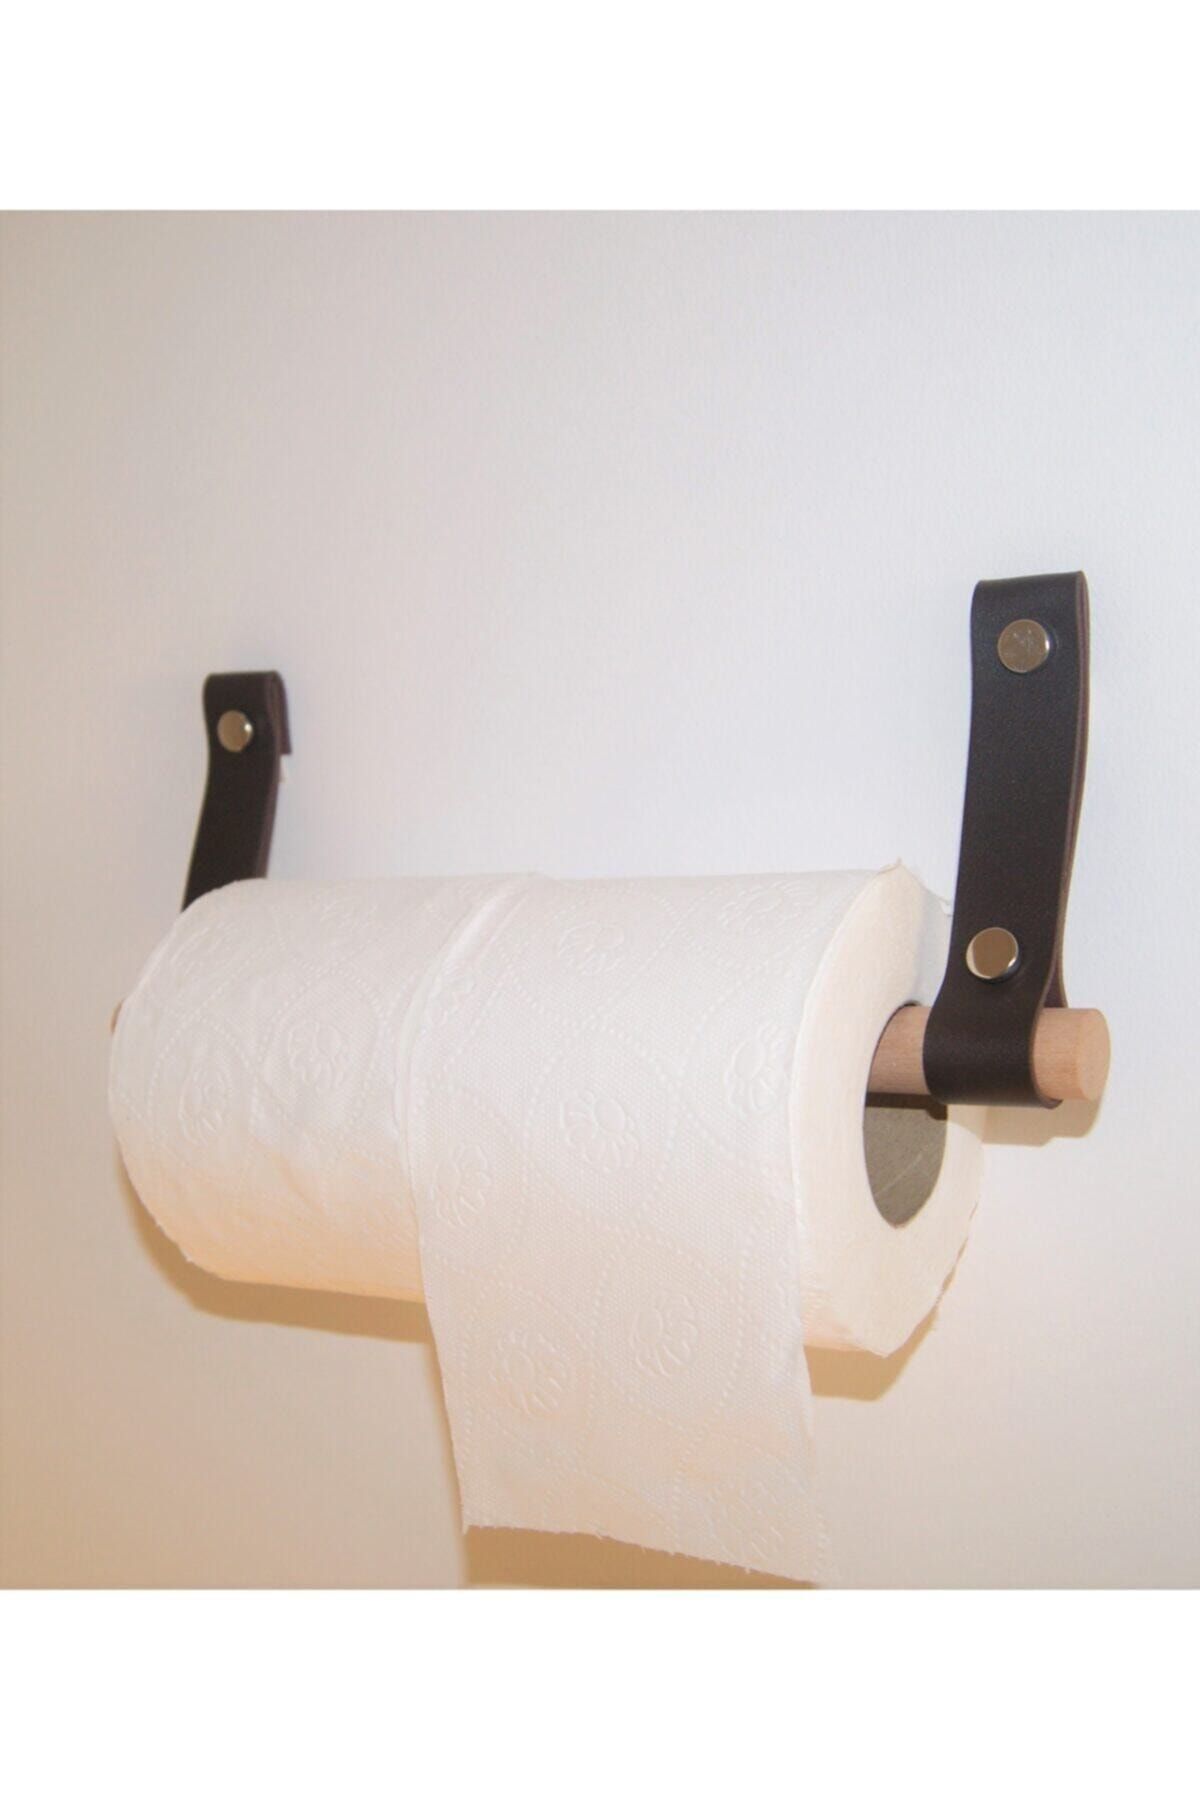 Bundera 2'li Deri Tuvalet Kağıdı Askısı Lw-002 Banyo Kağıtlığı Düzenleyici